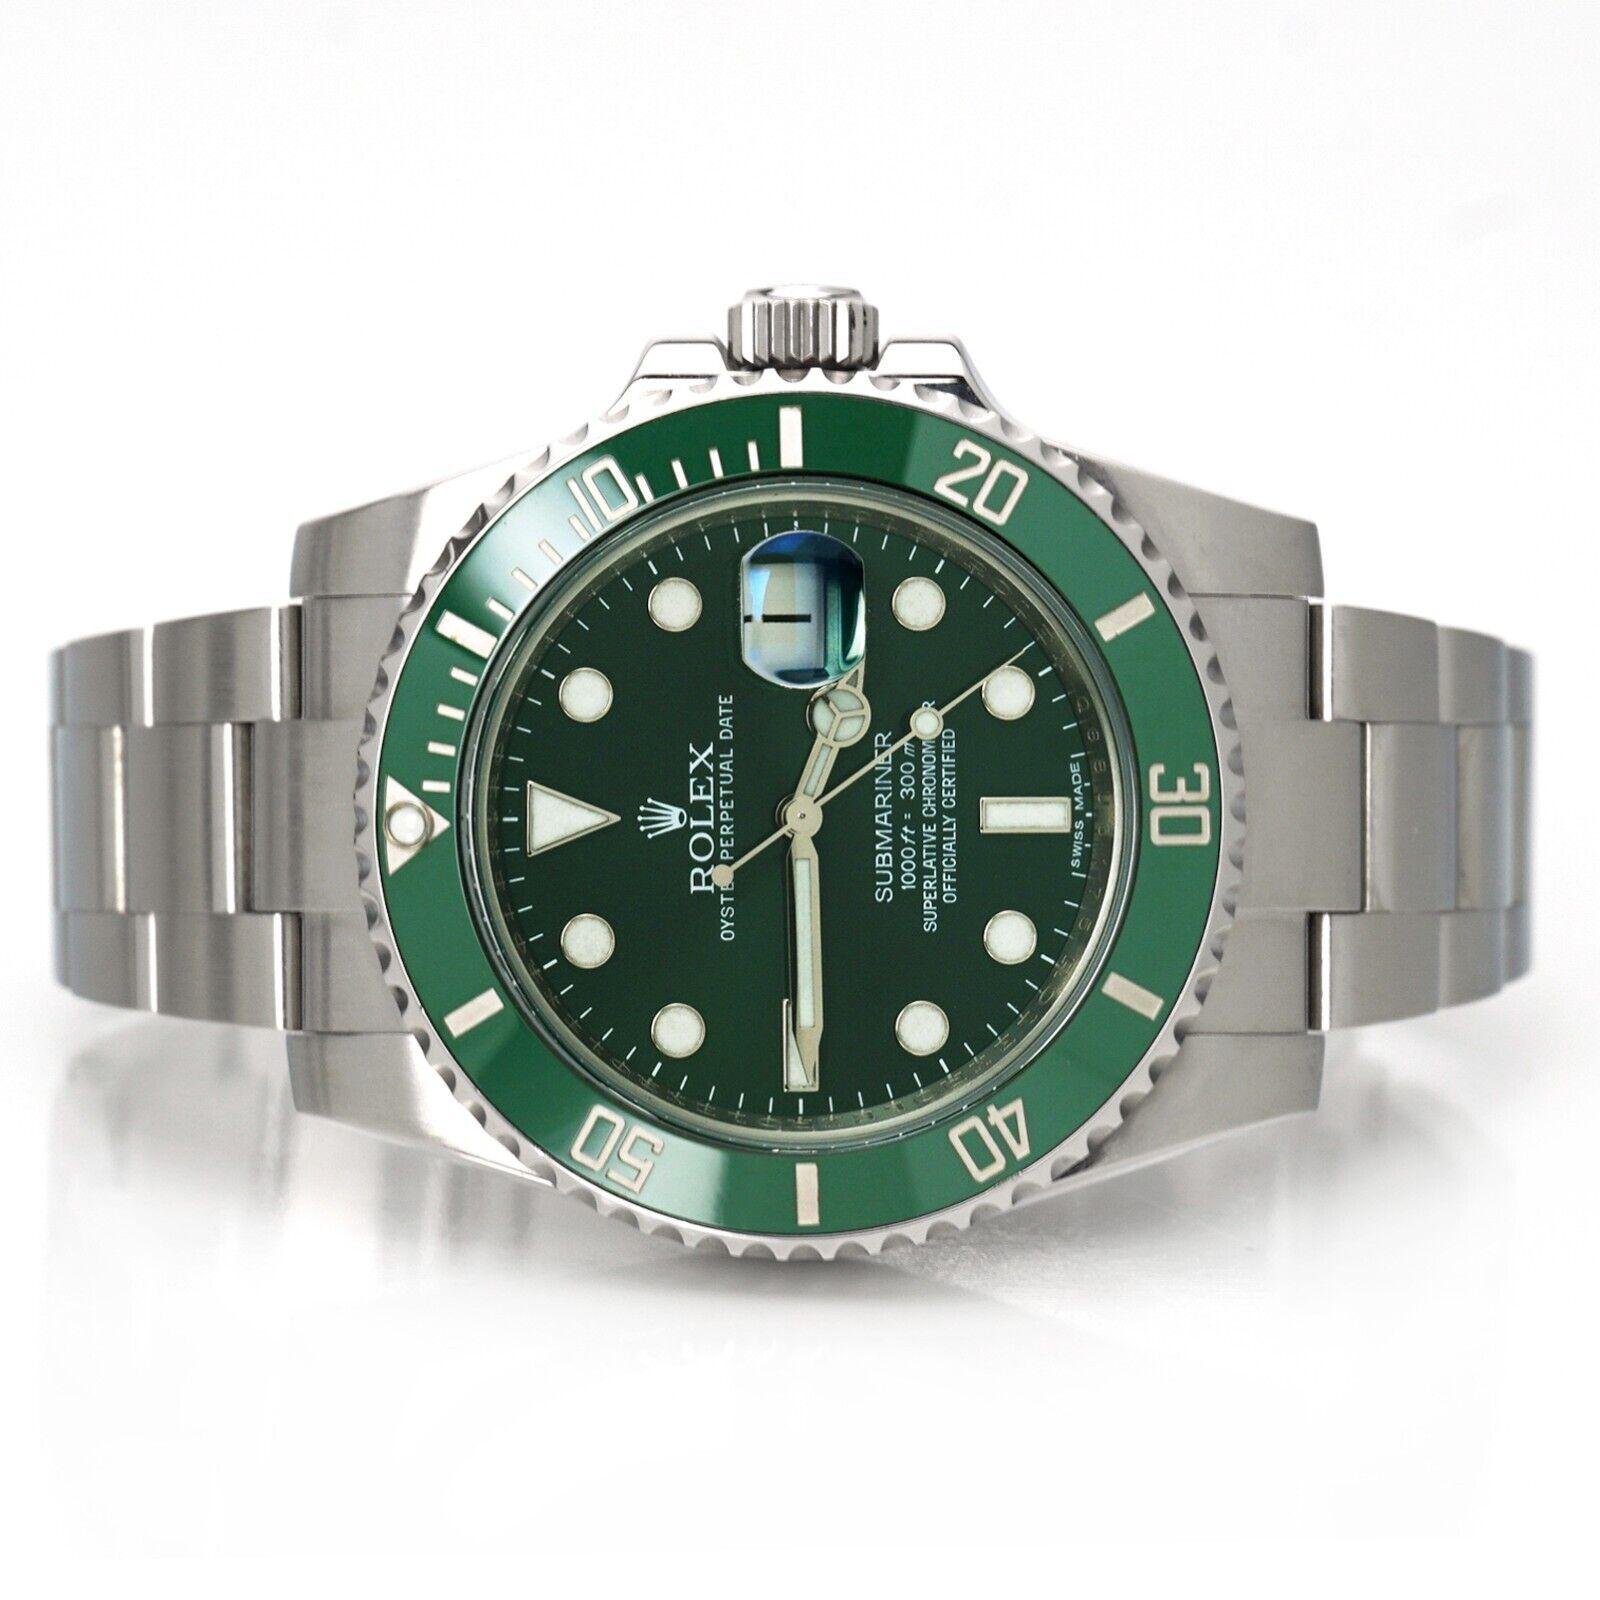 Rolex Submariner Date 'Hulk' Green Ceramic Steel Watch 116610 LV 2